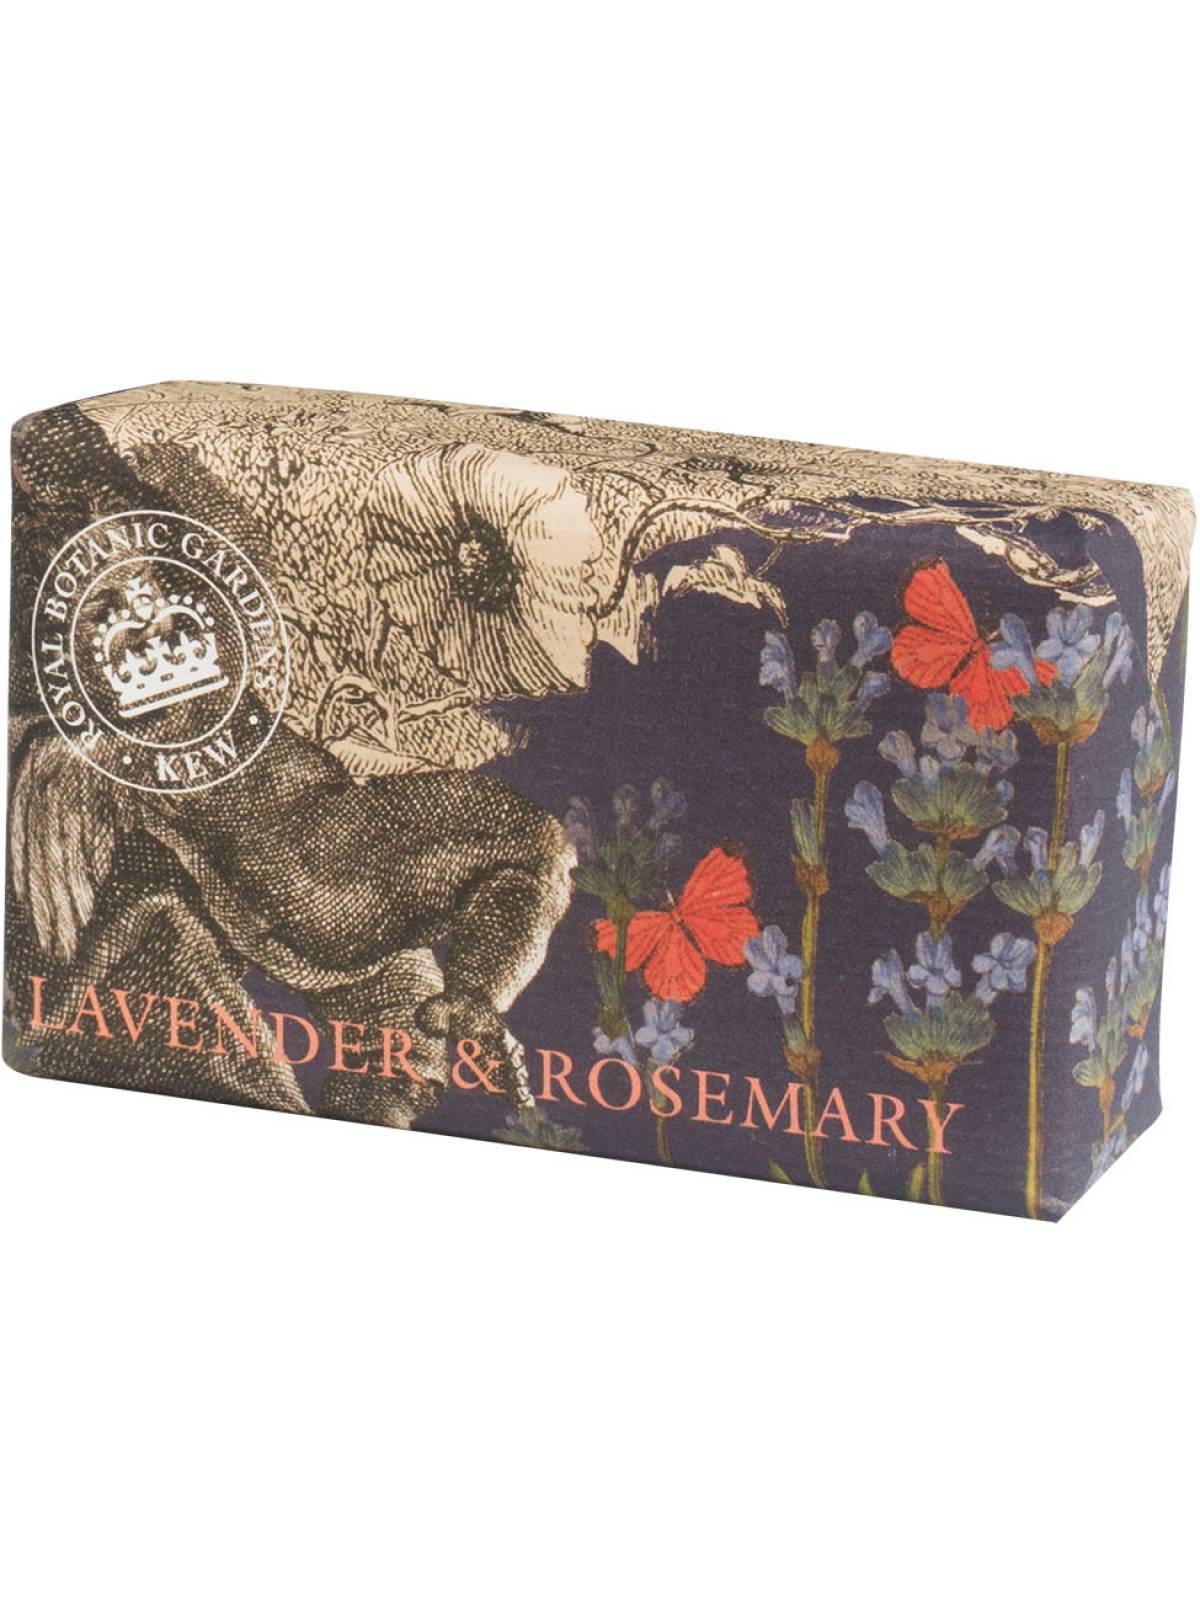 Lavender & Rosemary Kew Gardens Soap 240g